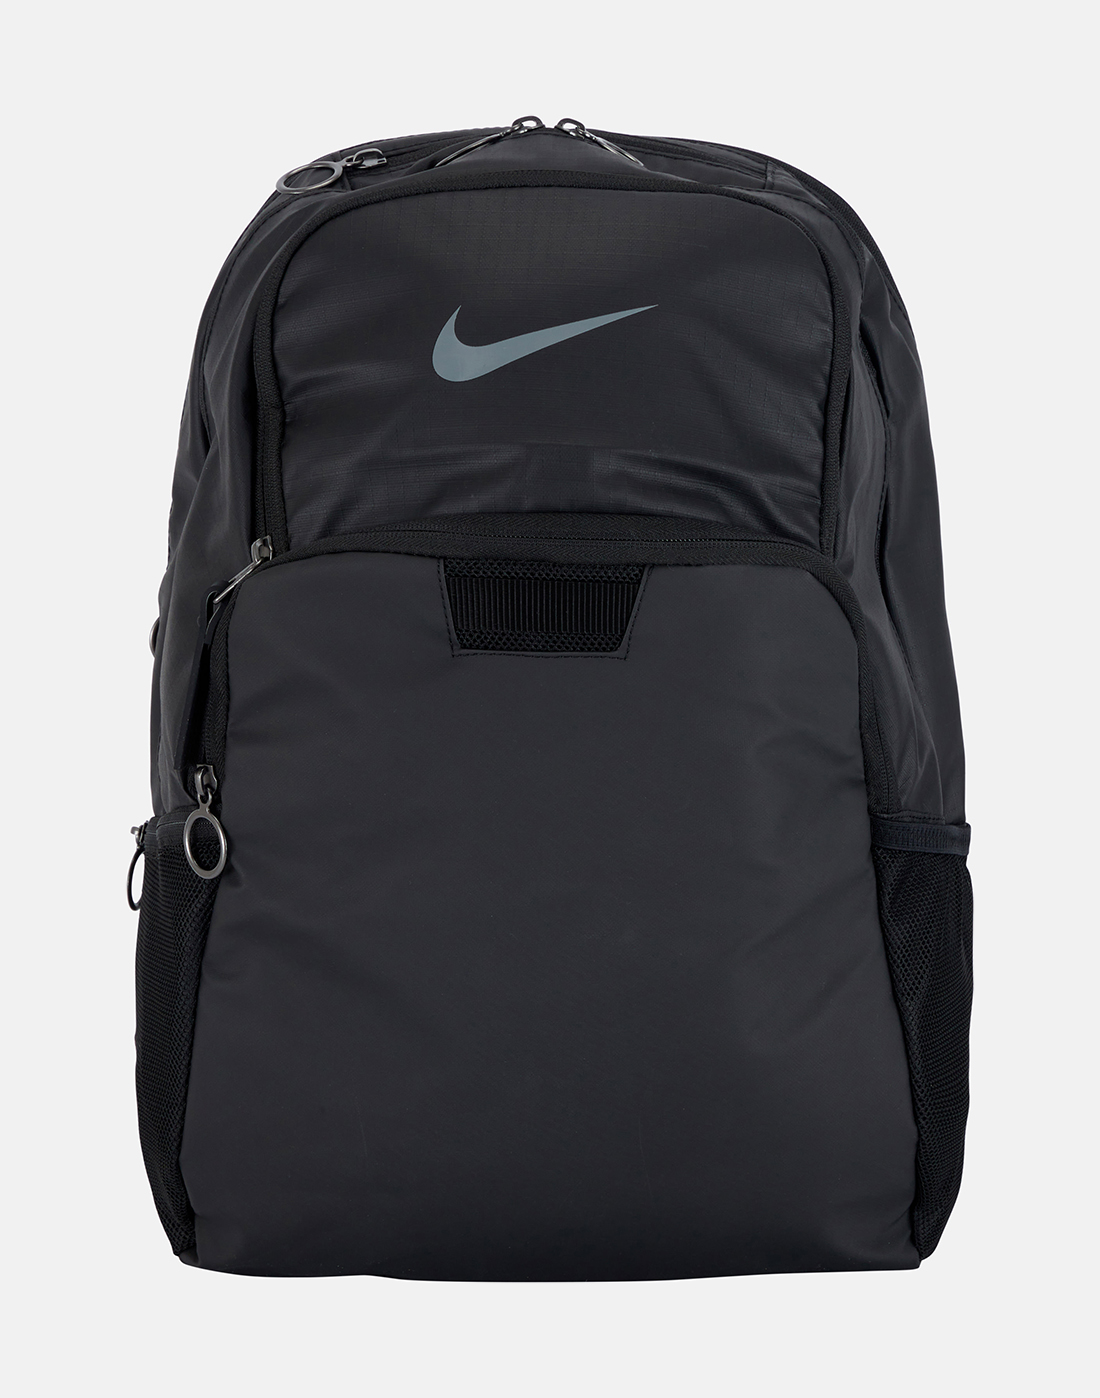 Nike Brasilia Winterised Training Large Backpack - Black | Life Style ...